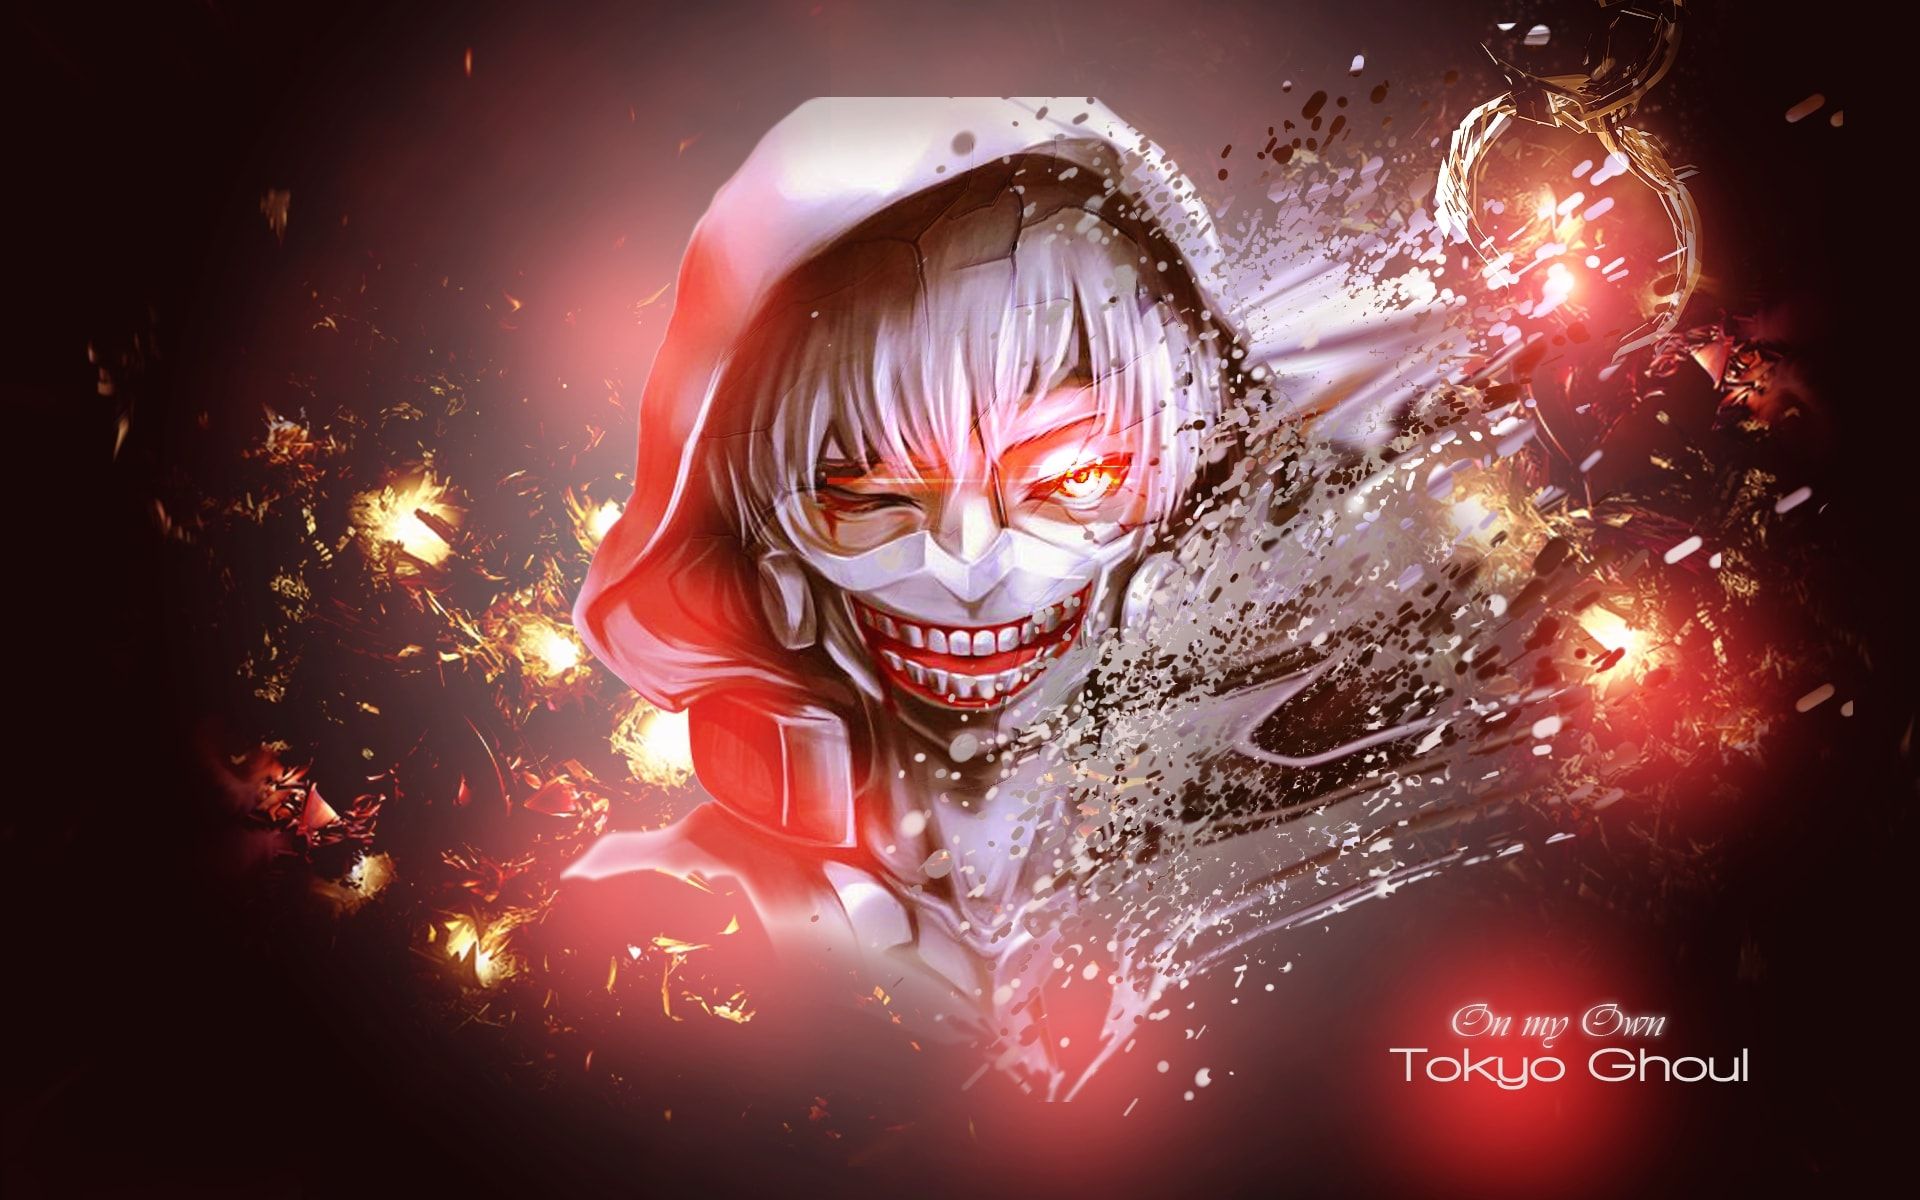 Wallpaper of Ken Kaneki, Anime, Tokyo Ghoul background & HD image